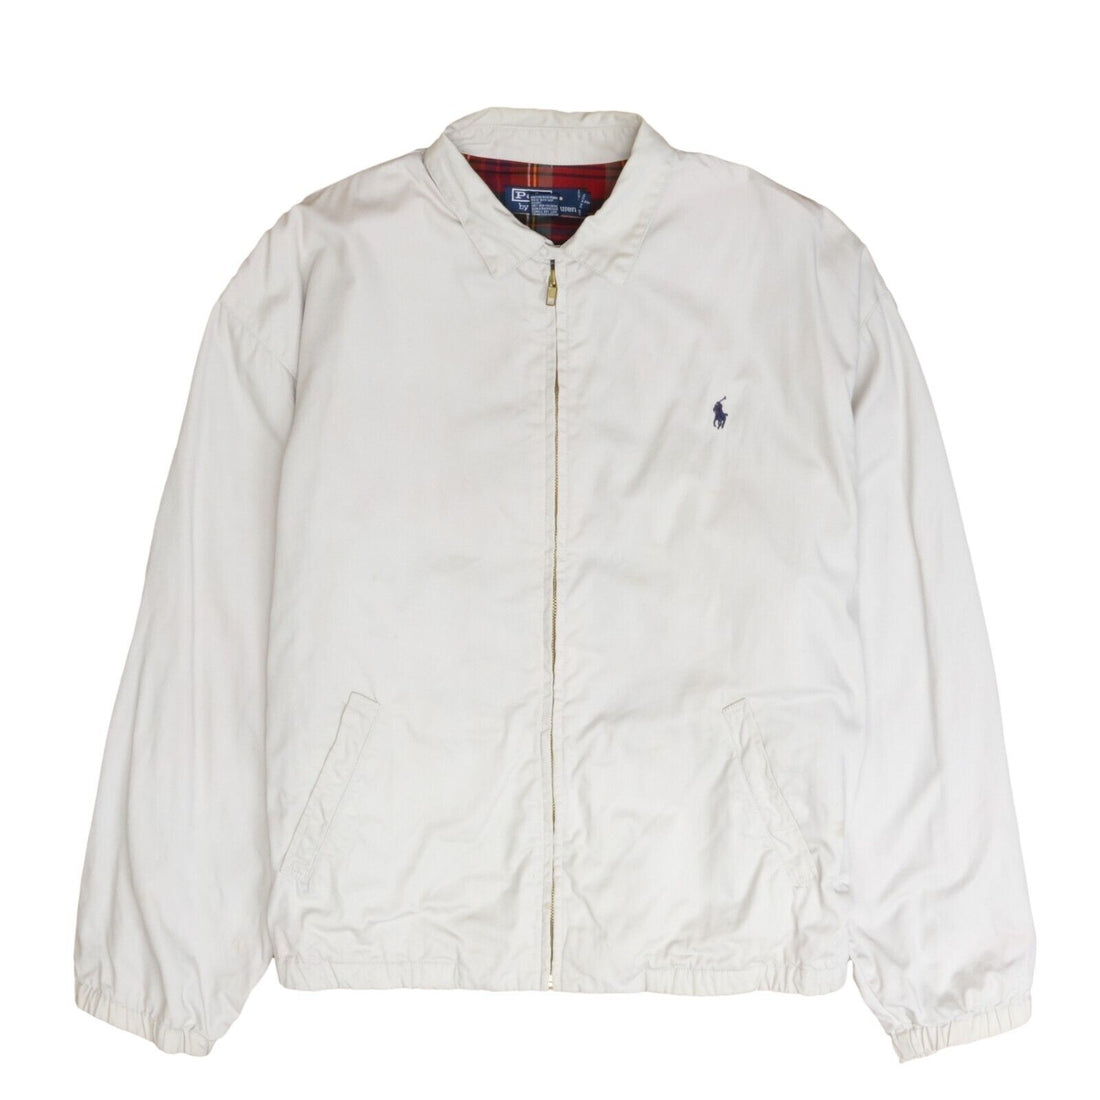 Vintage Polo Ralph Lauren Harrington Jacket Size Large Tan Plaid Lined